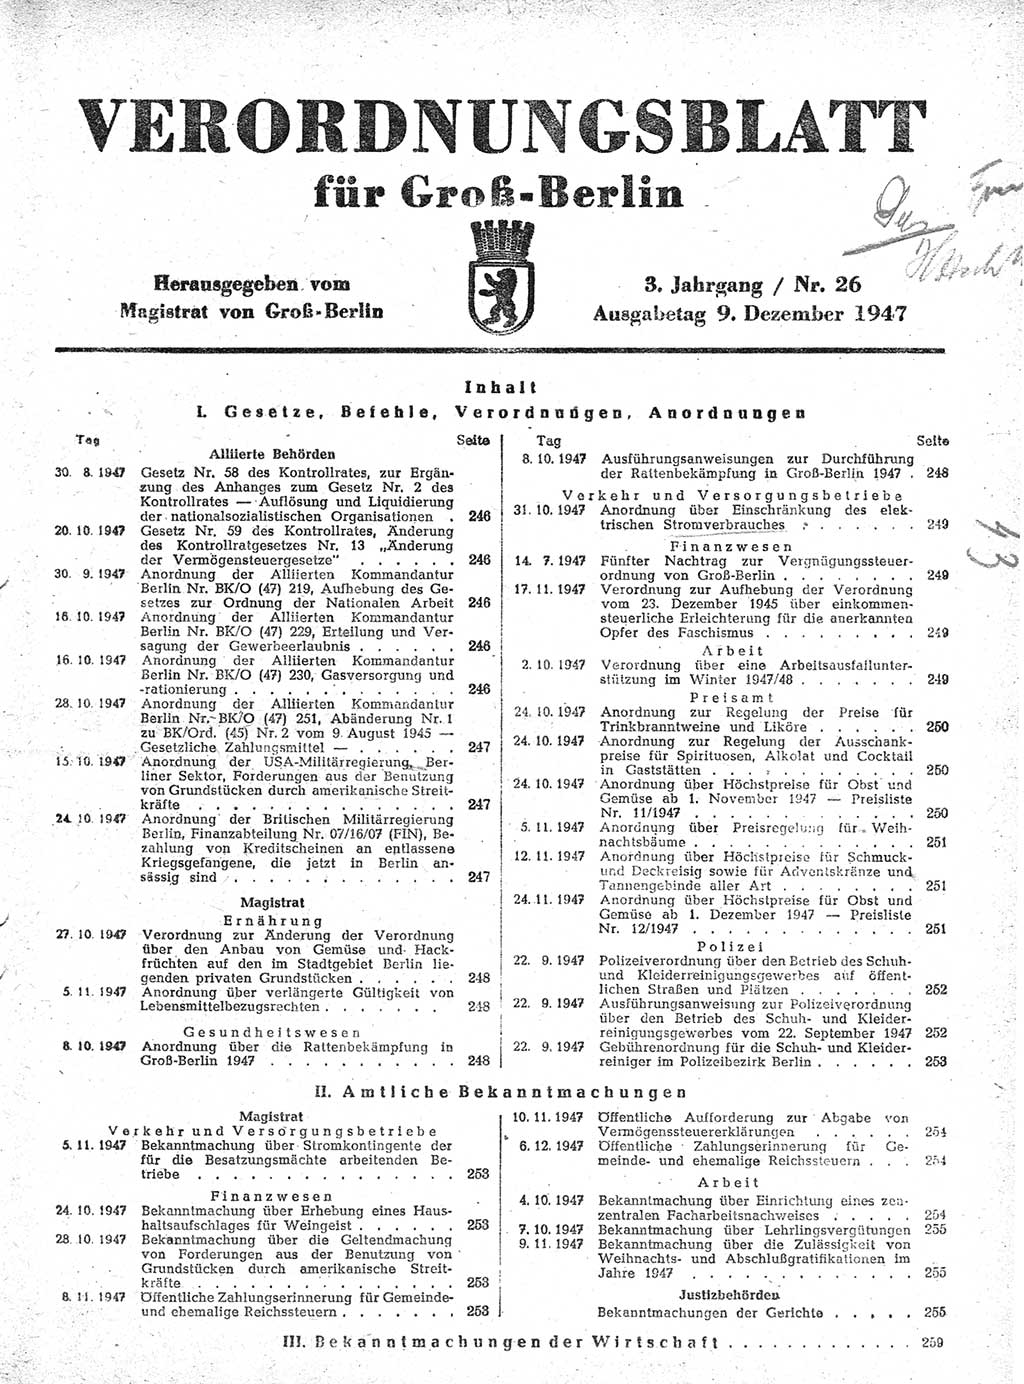 Verordnungsblatt (VOBl.) für Groß-Berlin 1947, Seite 245 (VOBl. Bln. 1947, S. 245)